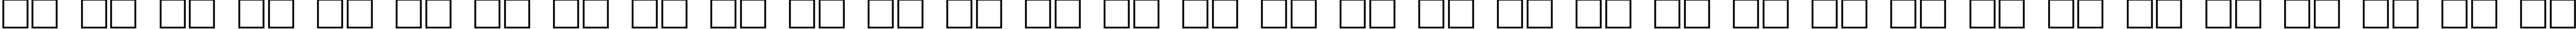 Пример написания русского алфавита шрифтом Karelia Bold